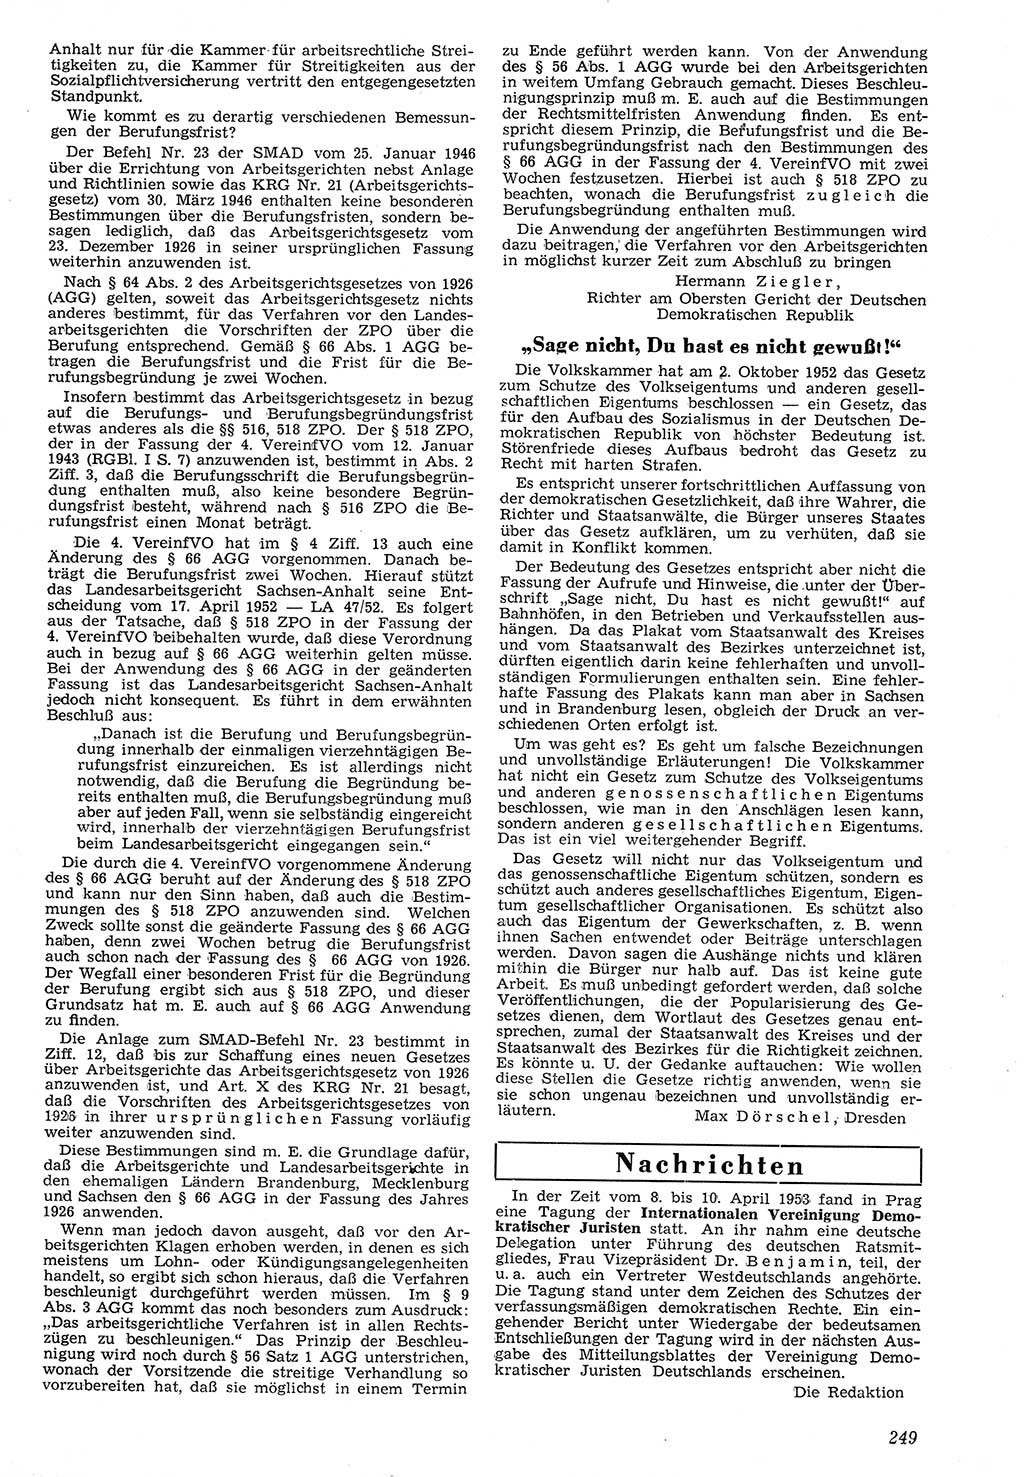 Neue Justiz (NJ), Zeitschrift für Recht und Rechtswissenschaft [Deutsche Demokratische Republik (DDR)], 7. Jahrgang 1953, Seite 249 (NJ DDR 1953, S. 249)